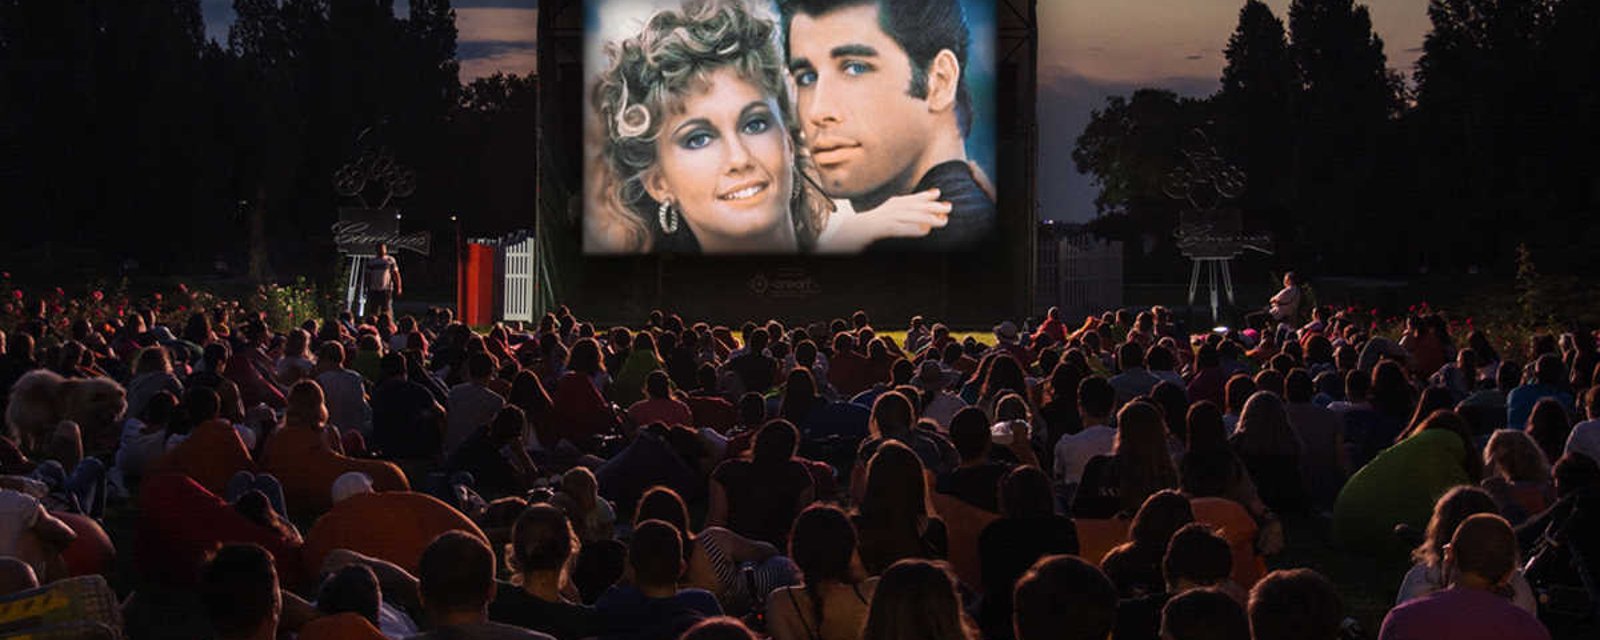 Ce samedi 1er juin, visionnez le film culte Grease sous les étoiles à Montréal